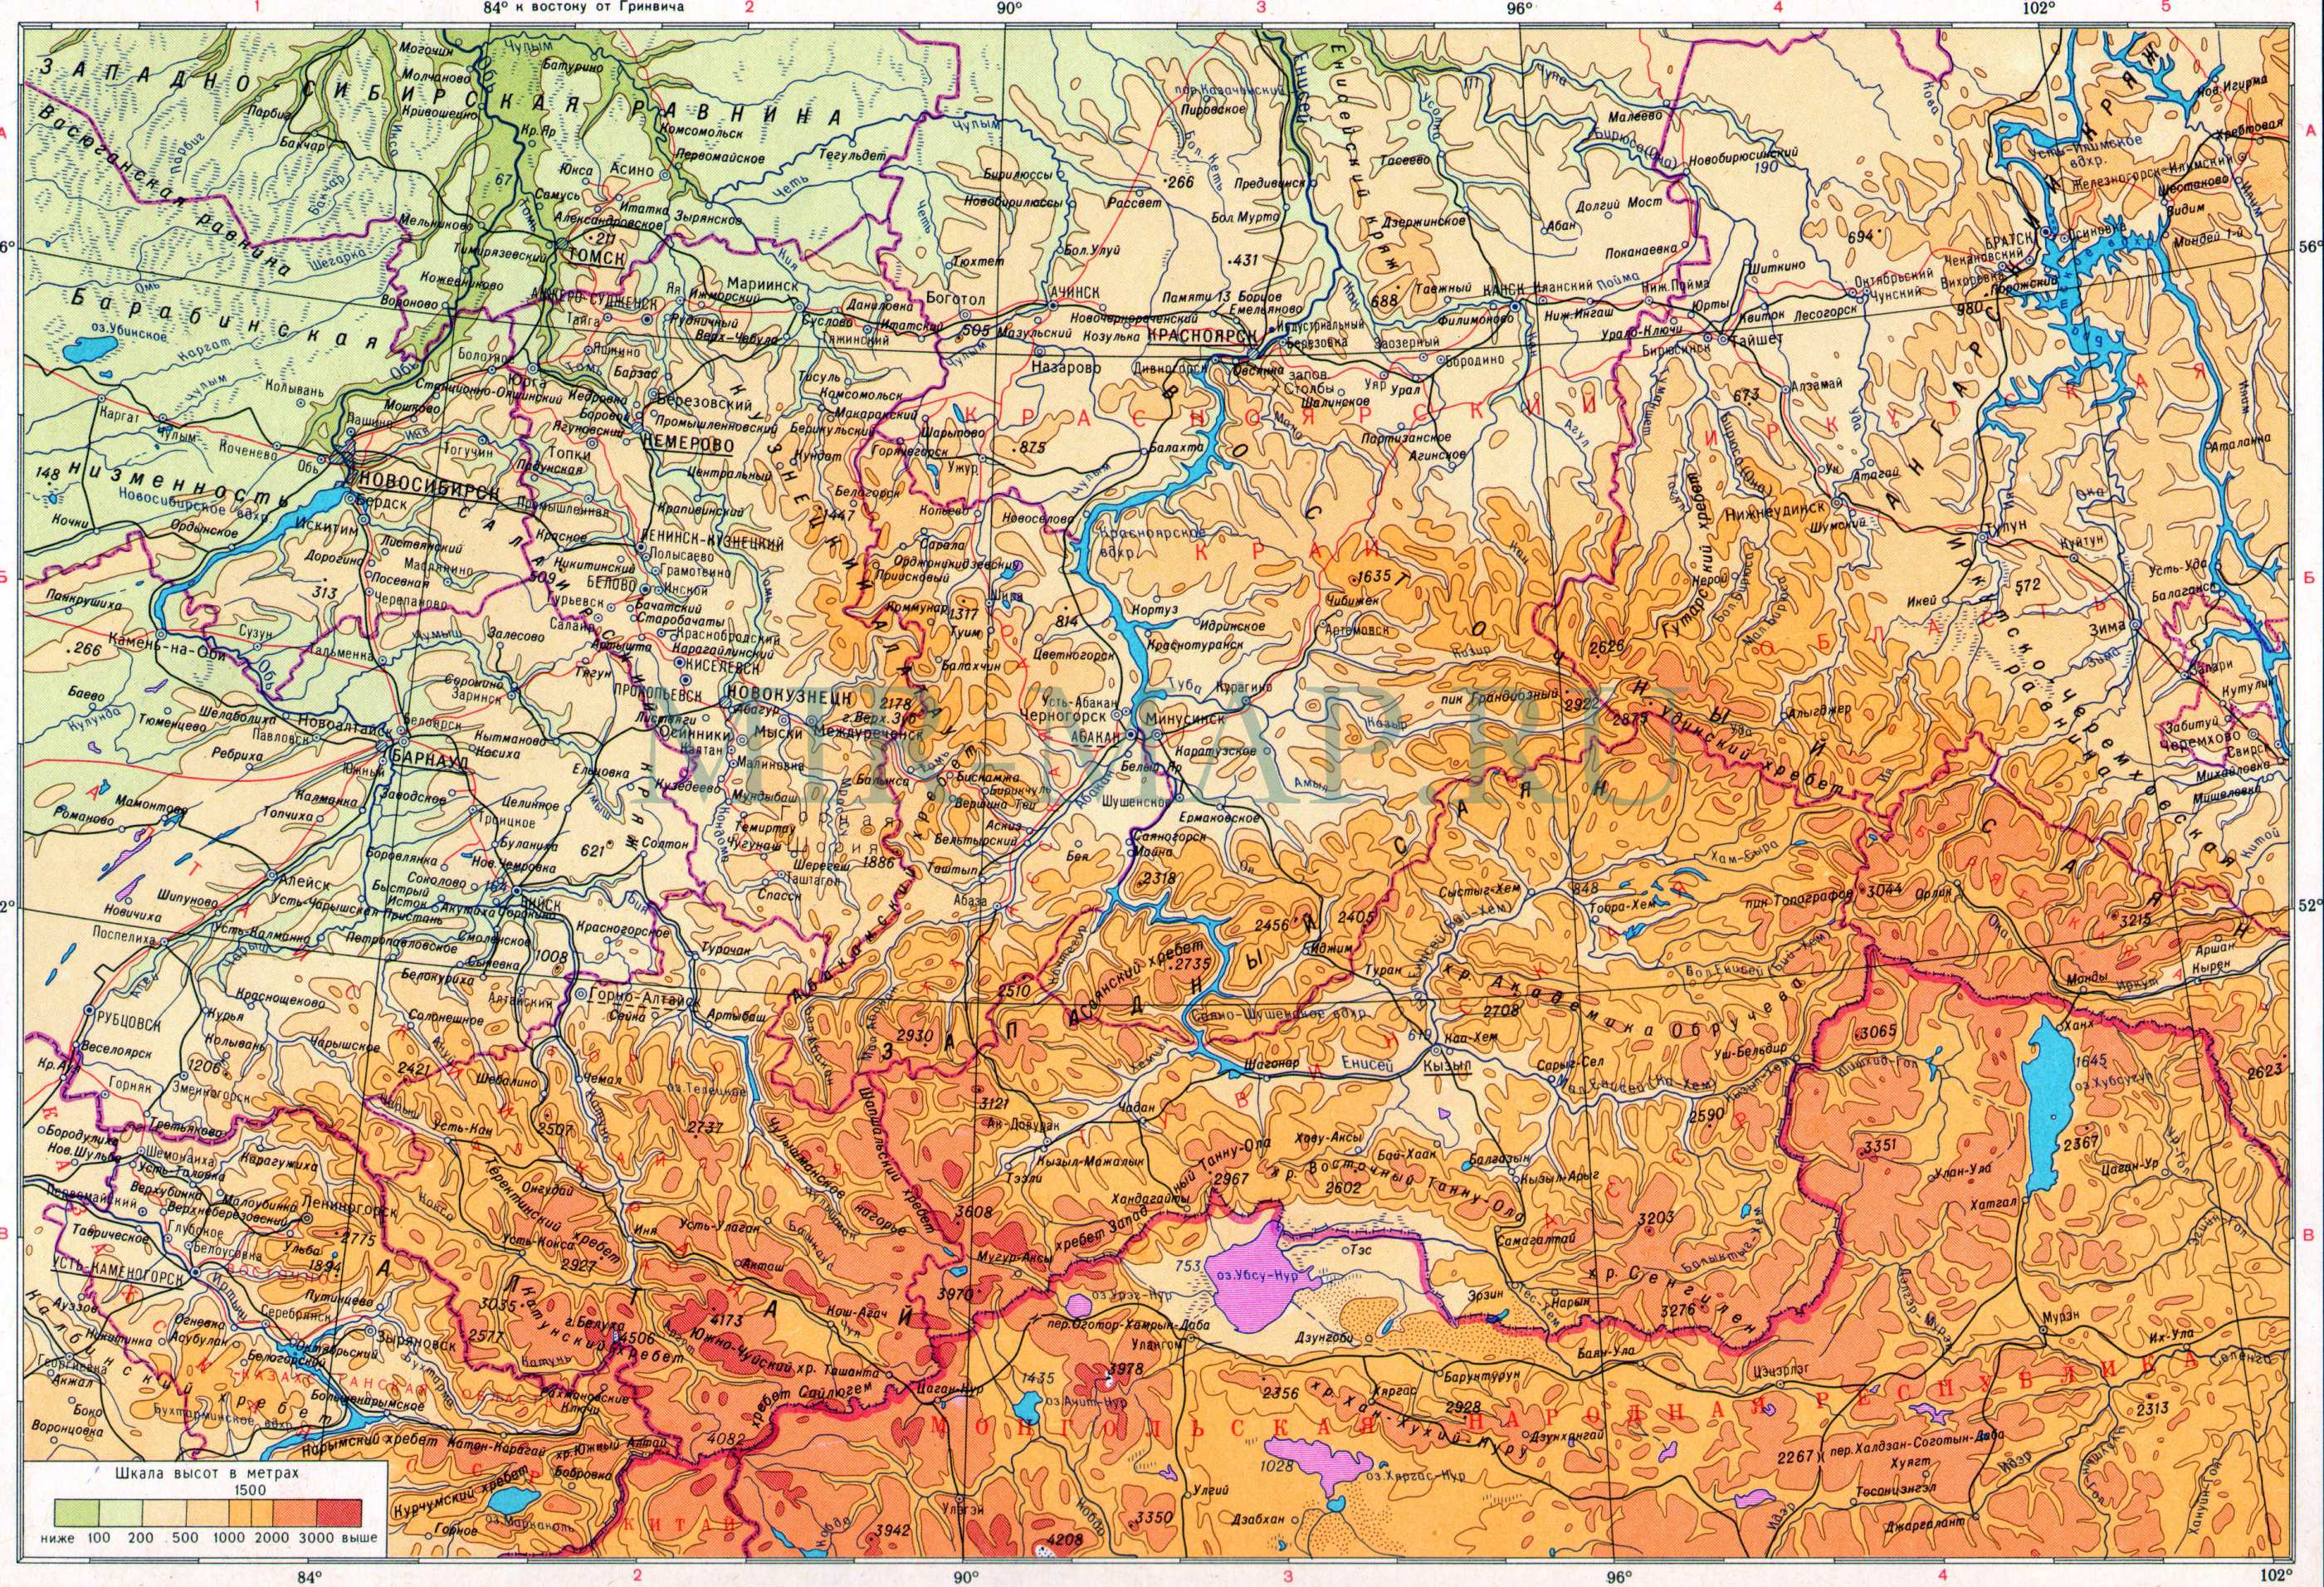 Географическая карта Алтая и Саян. Подробная географическая карта - Алтай и Саяны 1см:50км, A0 - 